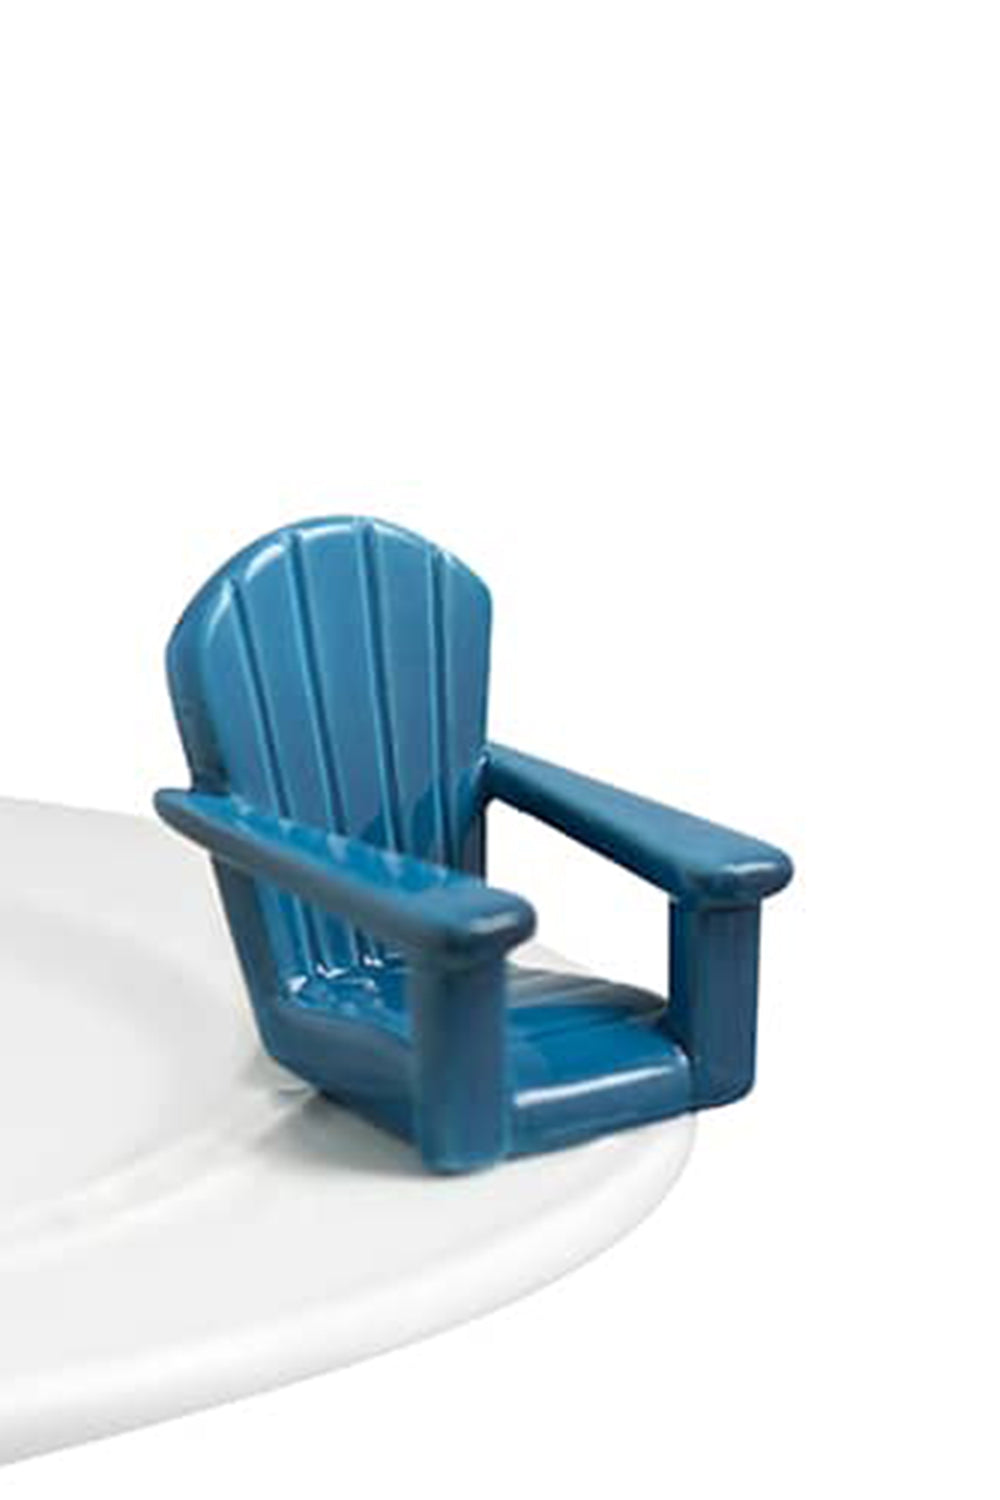 Nora Fleming Mini Attachment - Chillin Chair